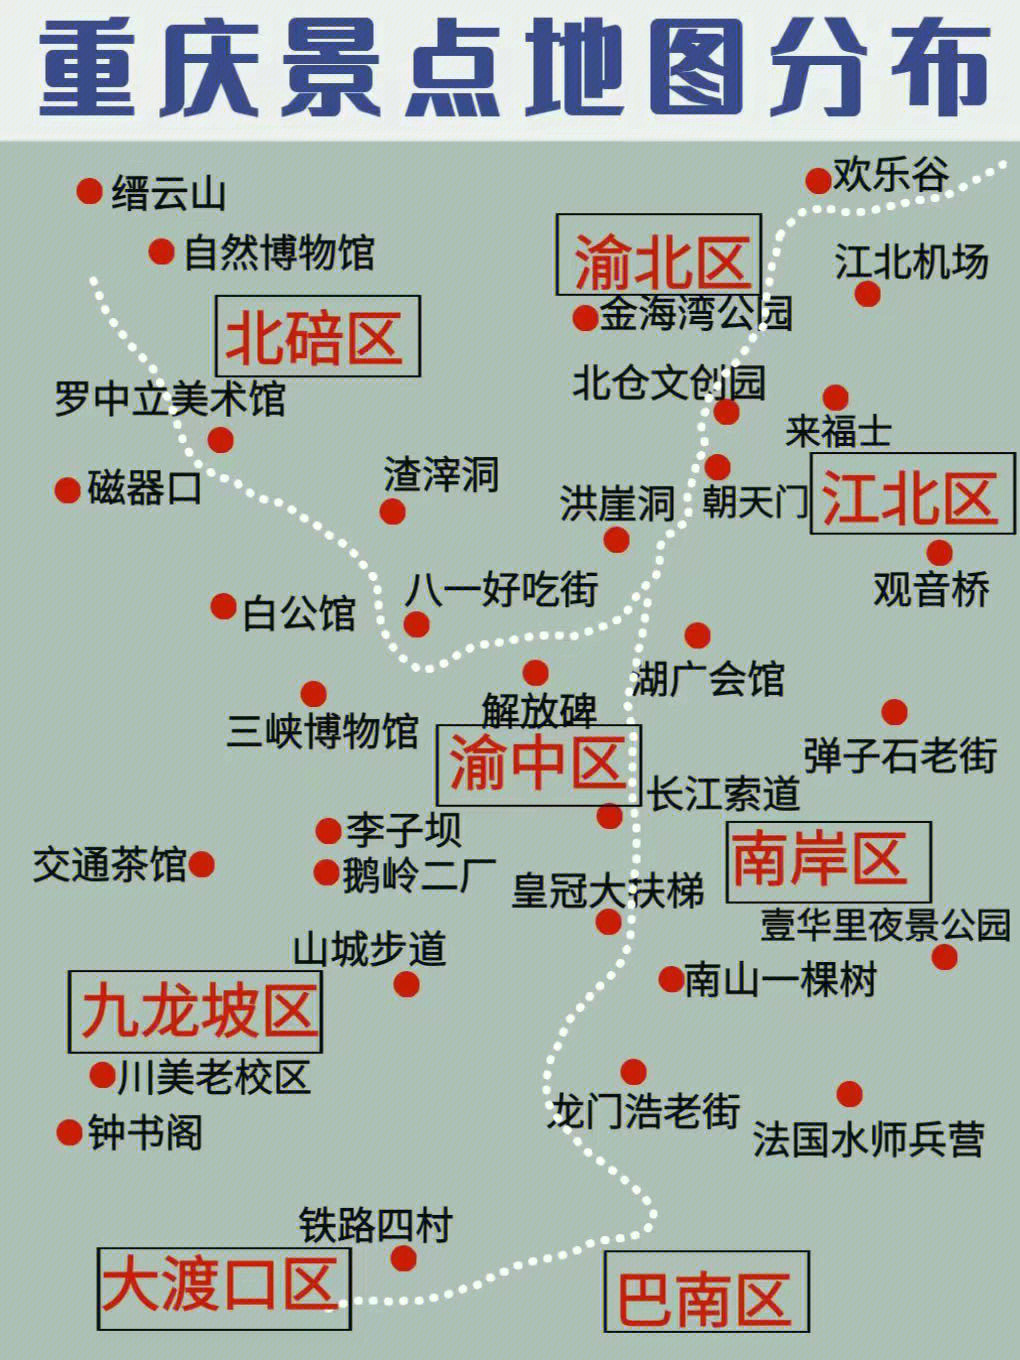 重庆景点地图解析60一看就懂